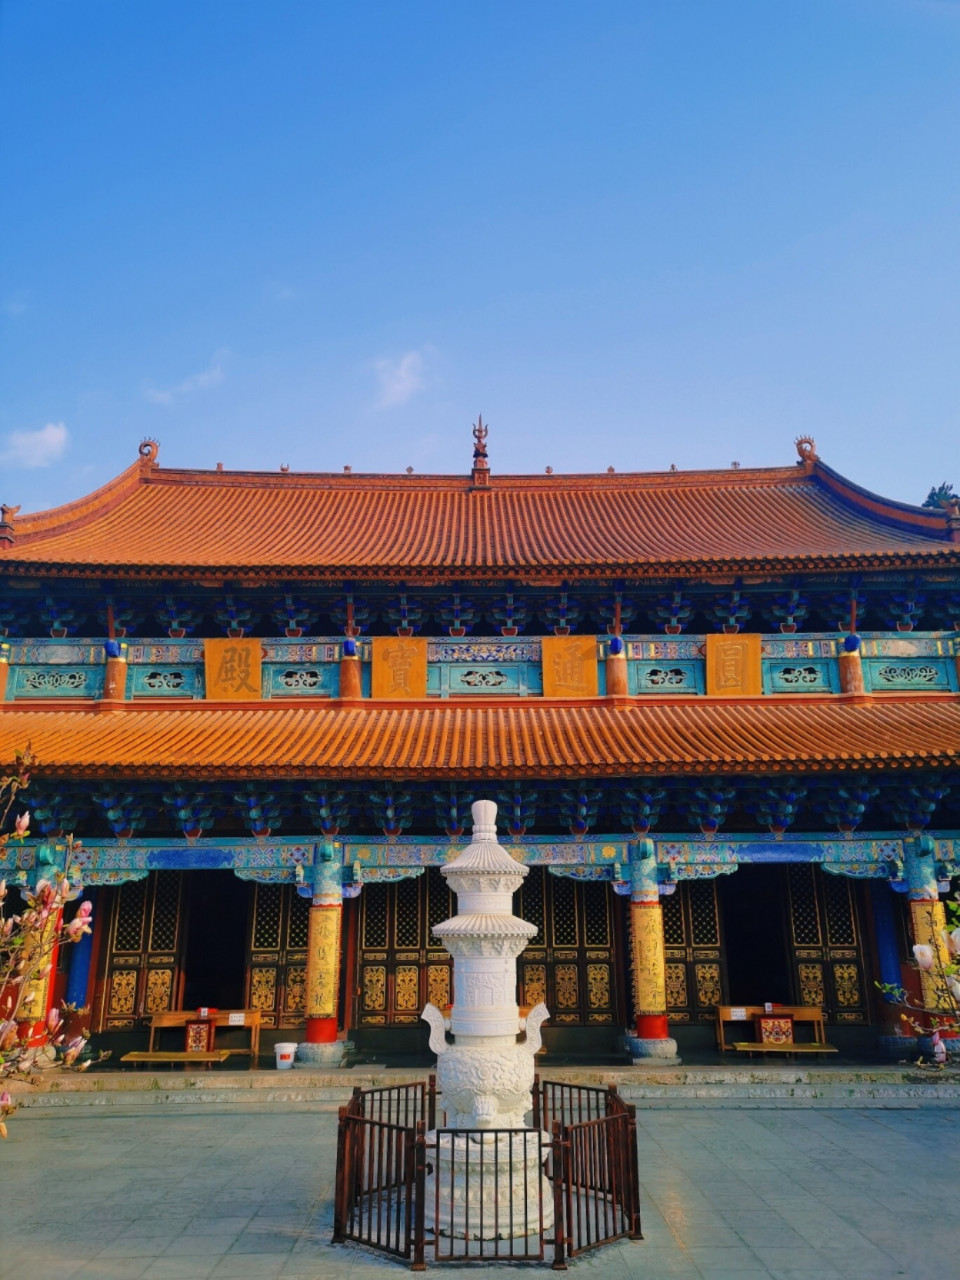 圆通寺,位于昆明市区内的圆通街,是昆明最古老的佛教寺院之一,已有